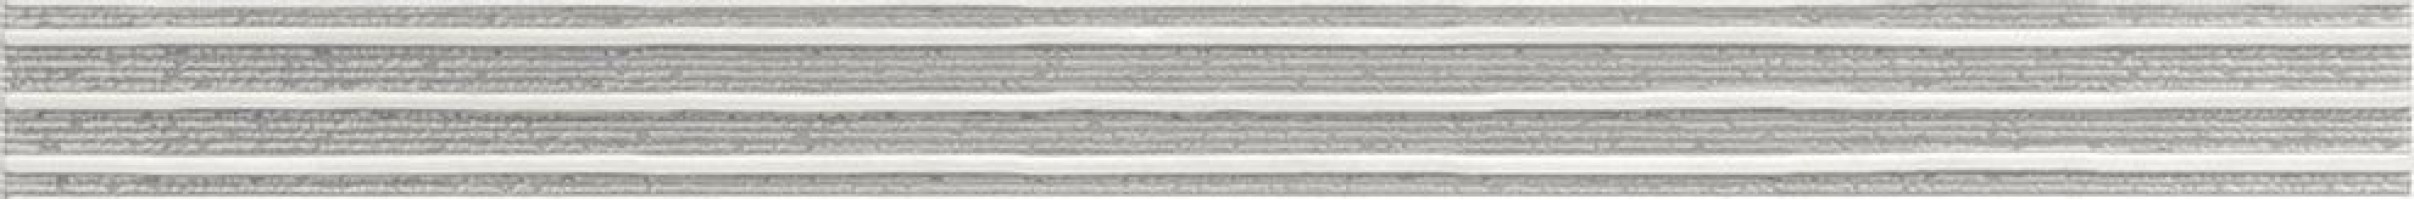 Бордюр Rako Senso серый 4.5x60 WLASZ028